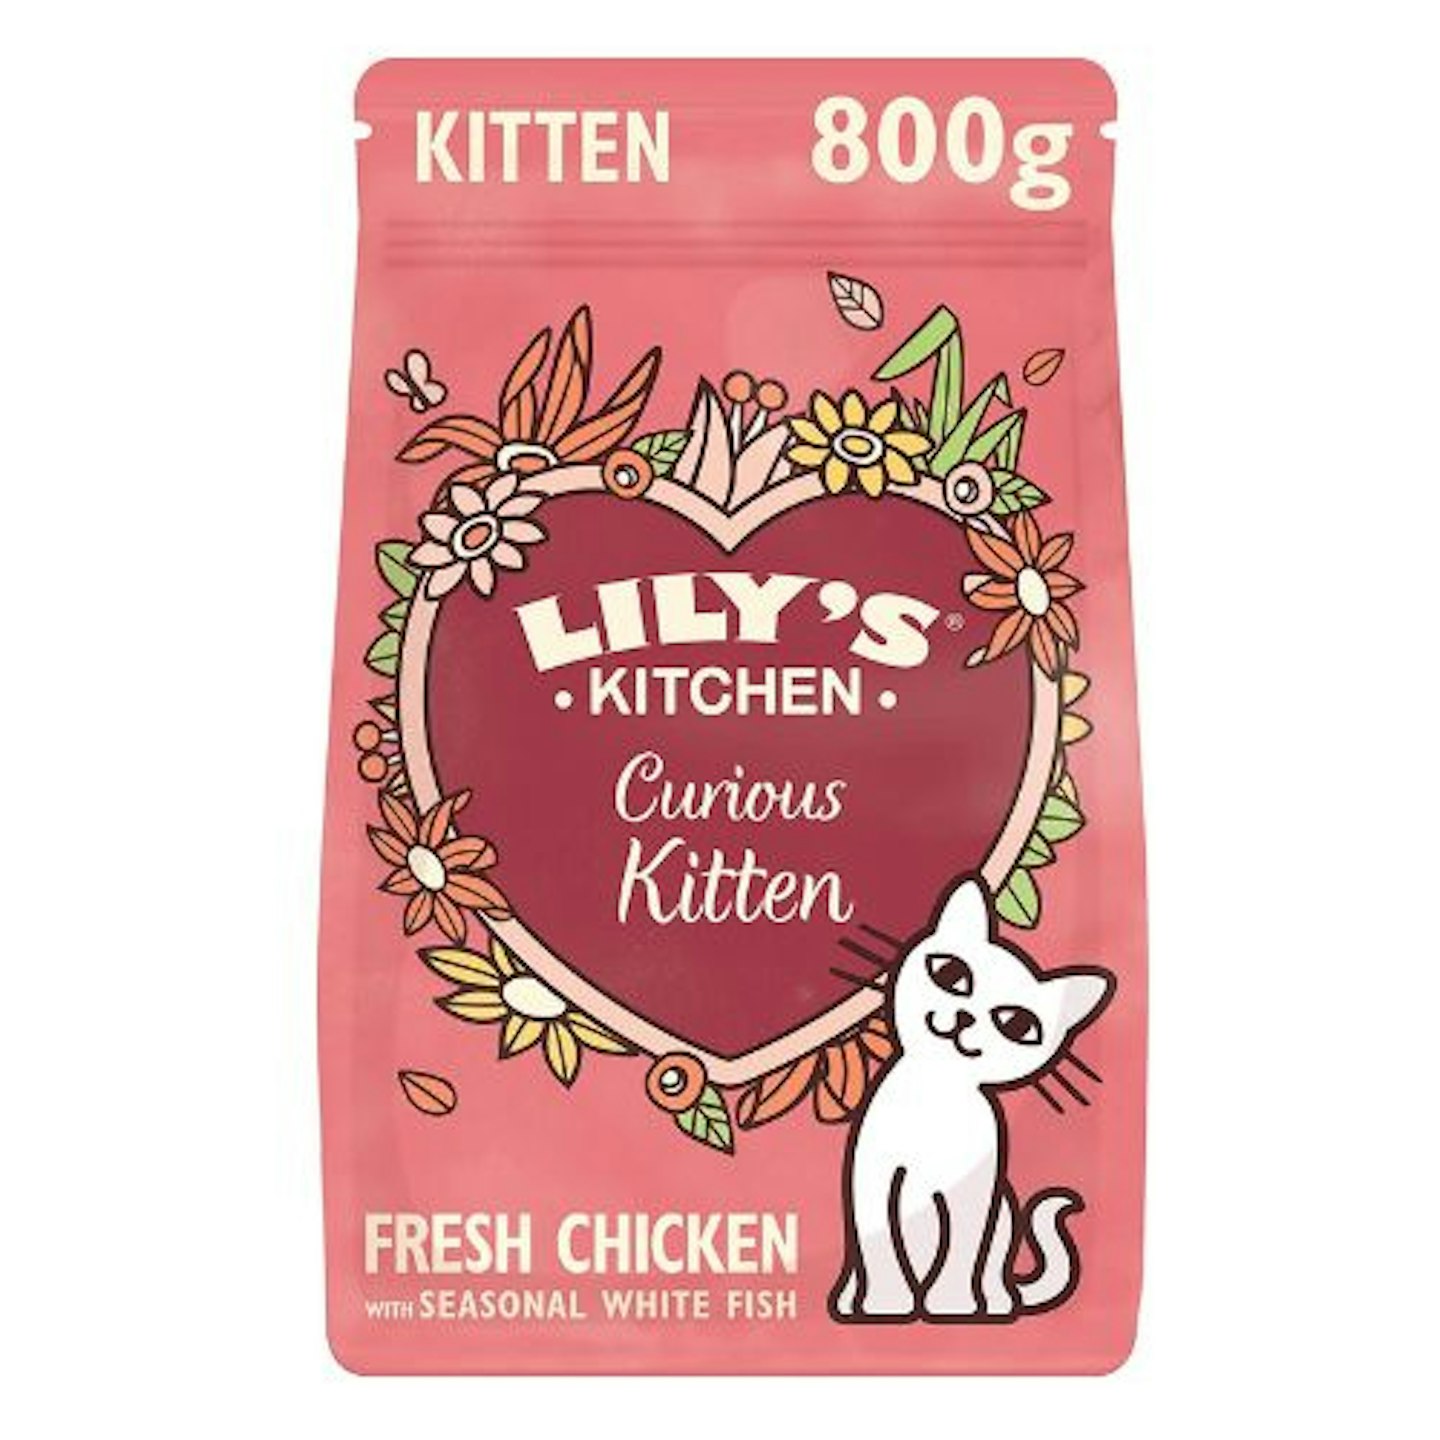 Lilys Kitchen Kitten Recipe with Chicken